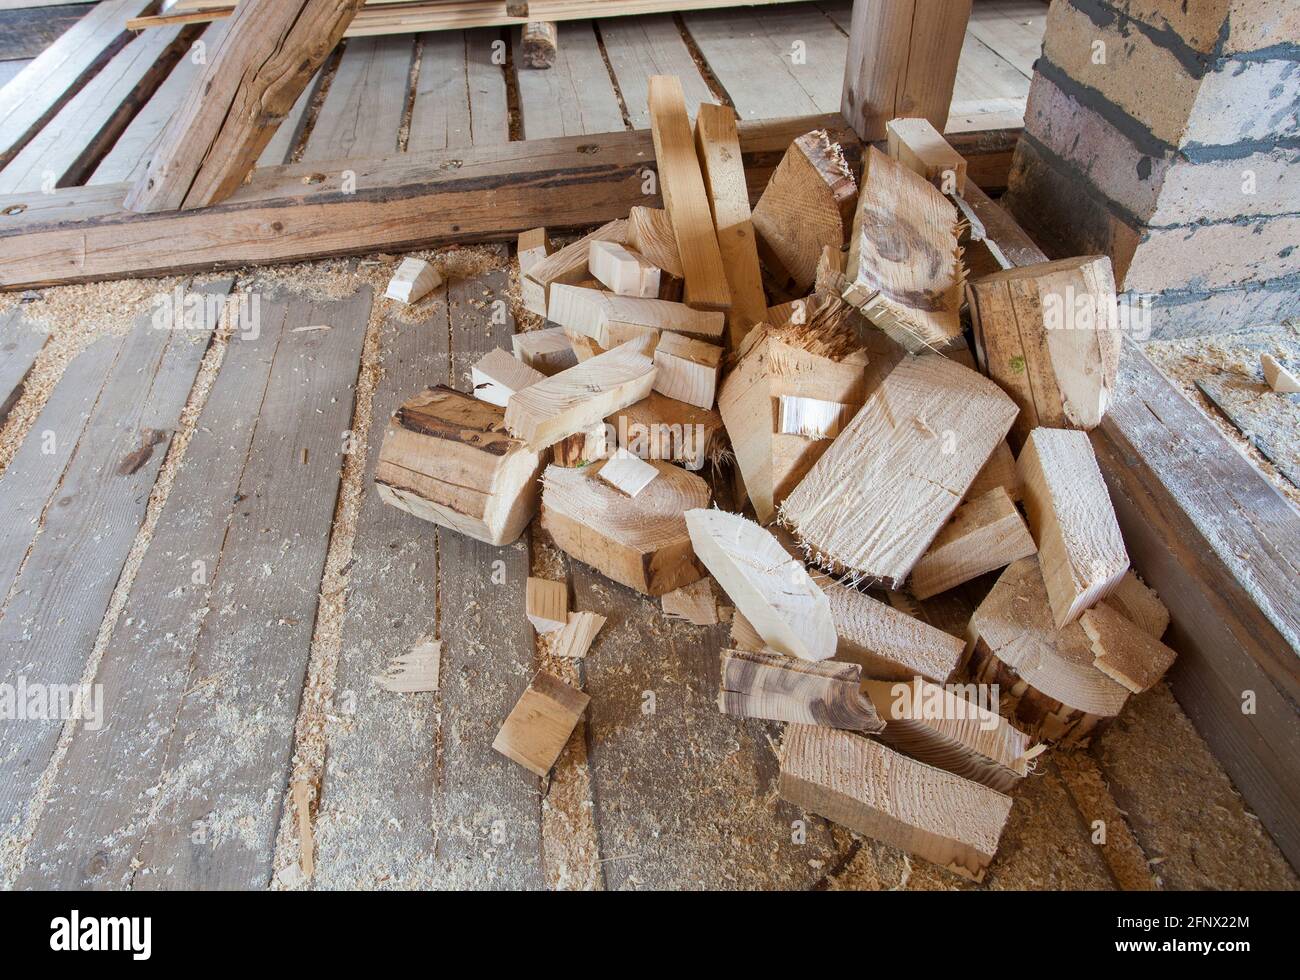 débris de bois pour la construction de maisons Banque D'Images